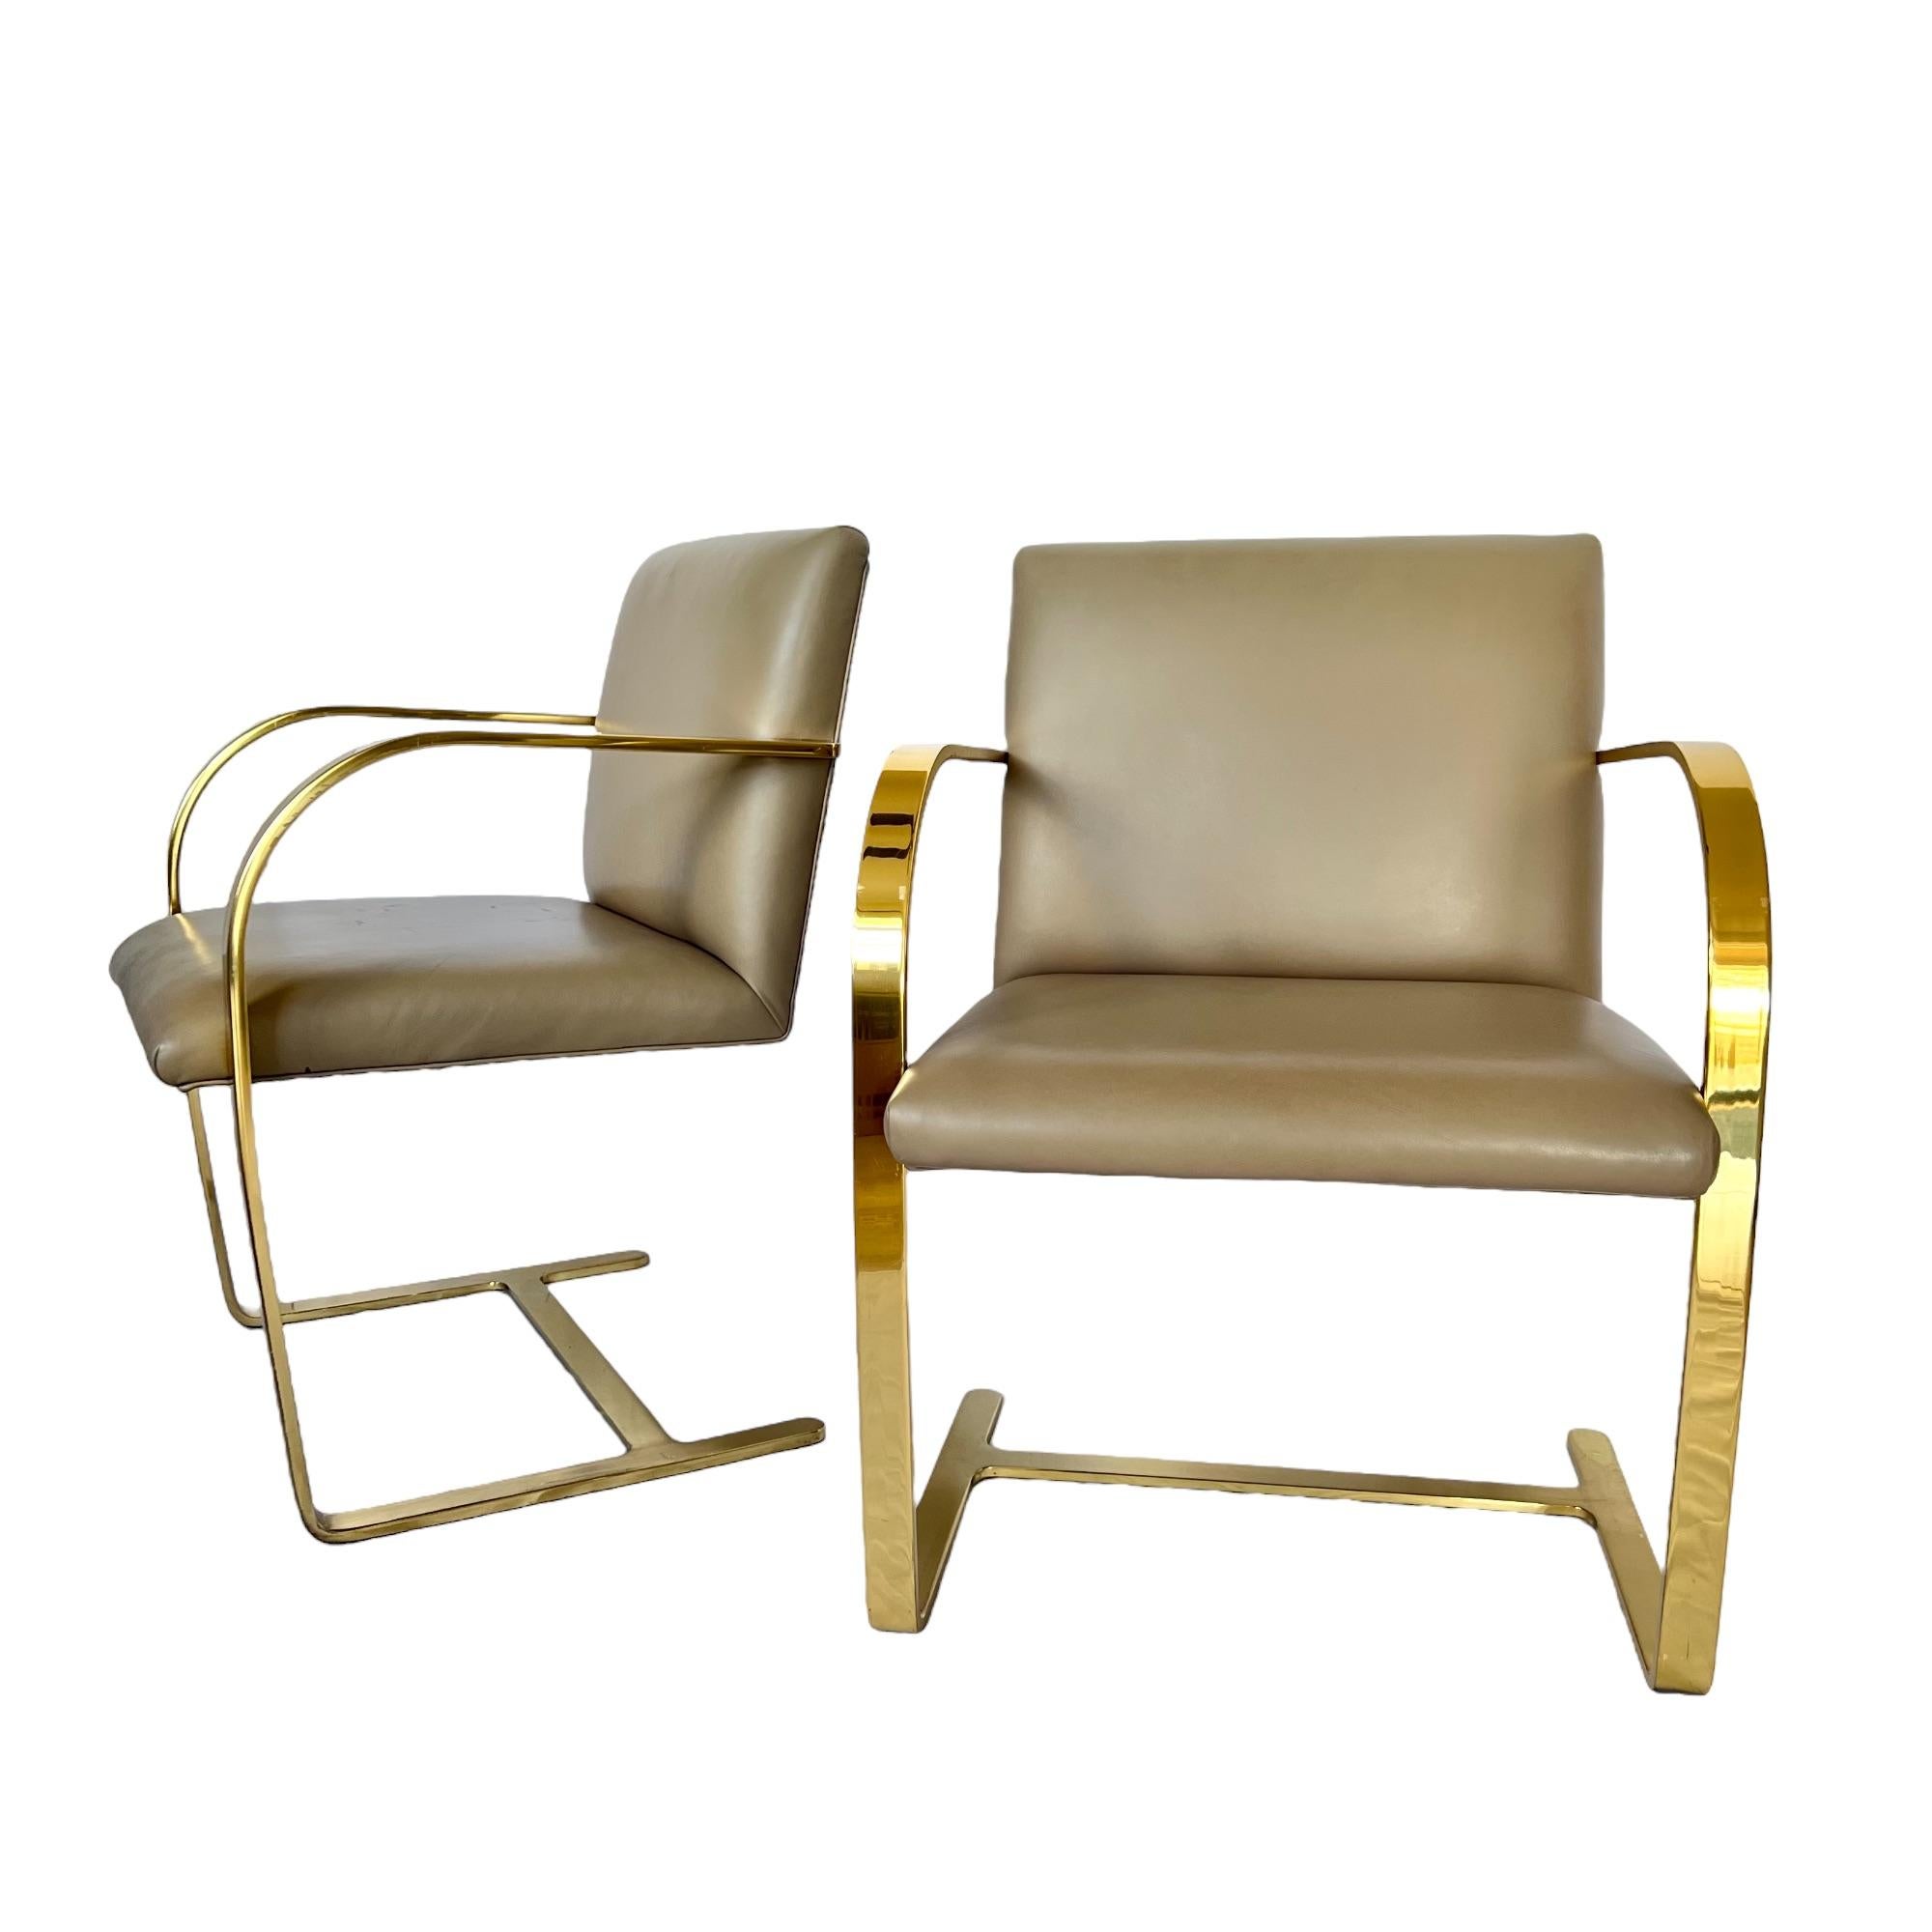 Une paire vintage de fauteuils à barre plate By Modern du milieu du siècle dernier, conçus par Ludwig Mies van der Rohe et produits par Interior Crafts. Châssis en laiton massif, dossier et assise en cuir taupe.

Dimensions : 23 